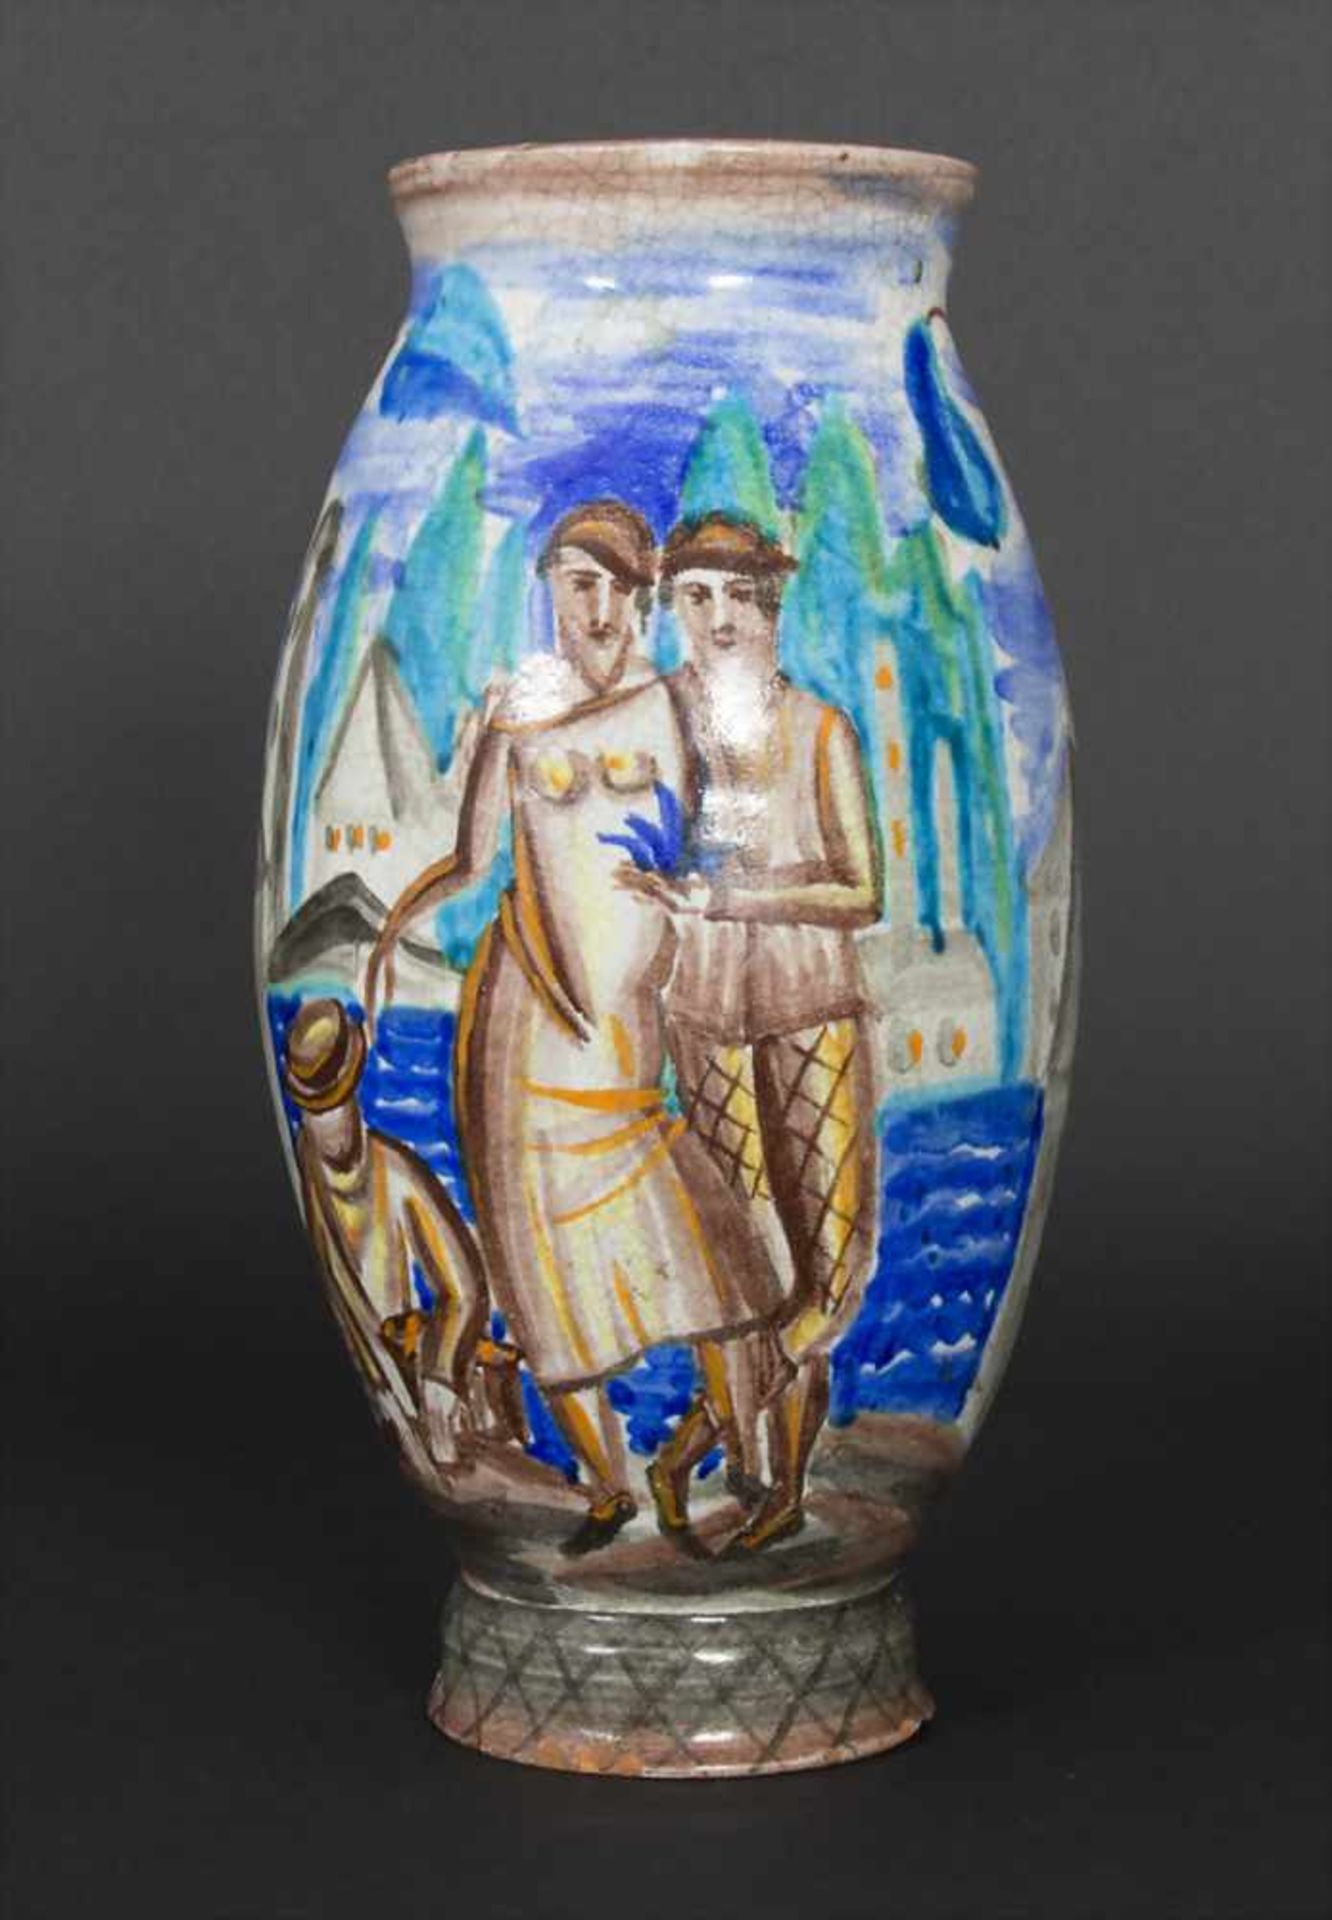 Ziervase / A vase, wohl Österreich, um 1925Material: Keramik, umlaufend polychrom bemalt, Form und